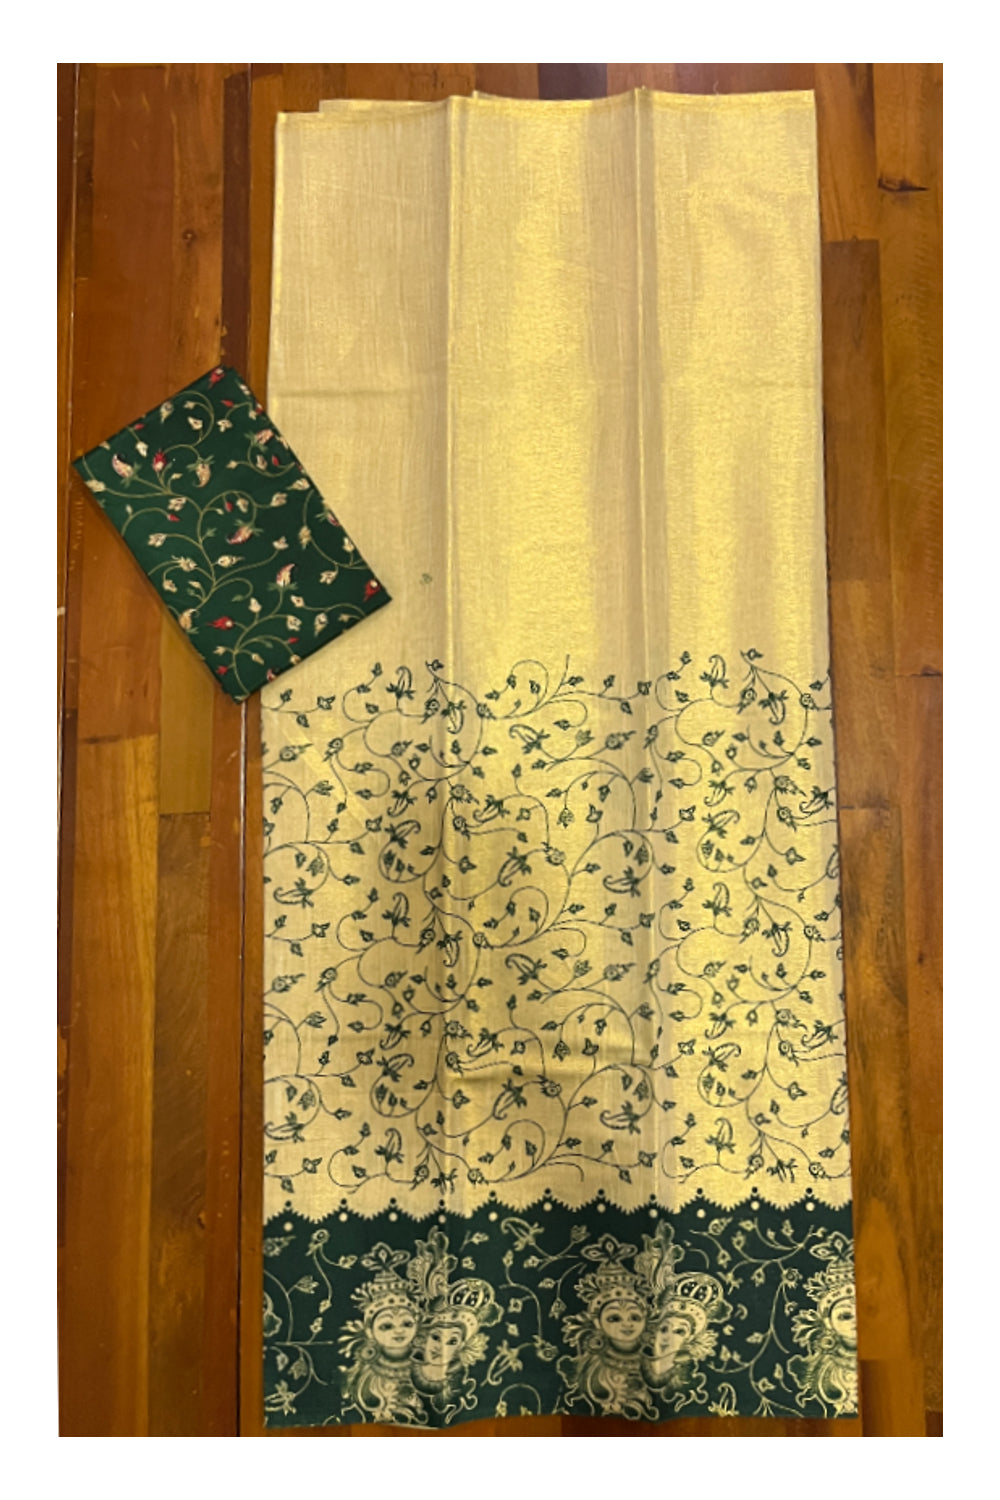 Kerala Tissue Block Printed Pavada and Green Designer Blouse Material for Kids 3 Meters